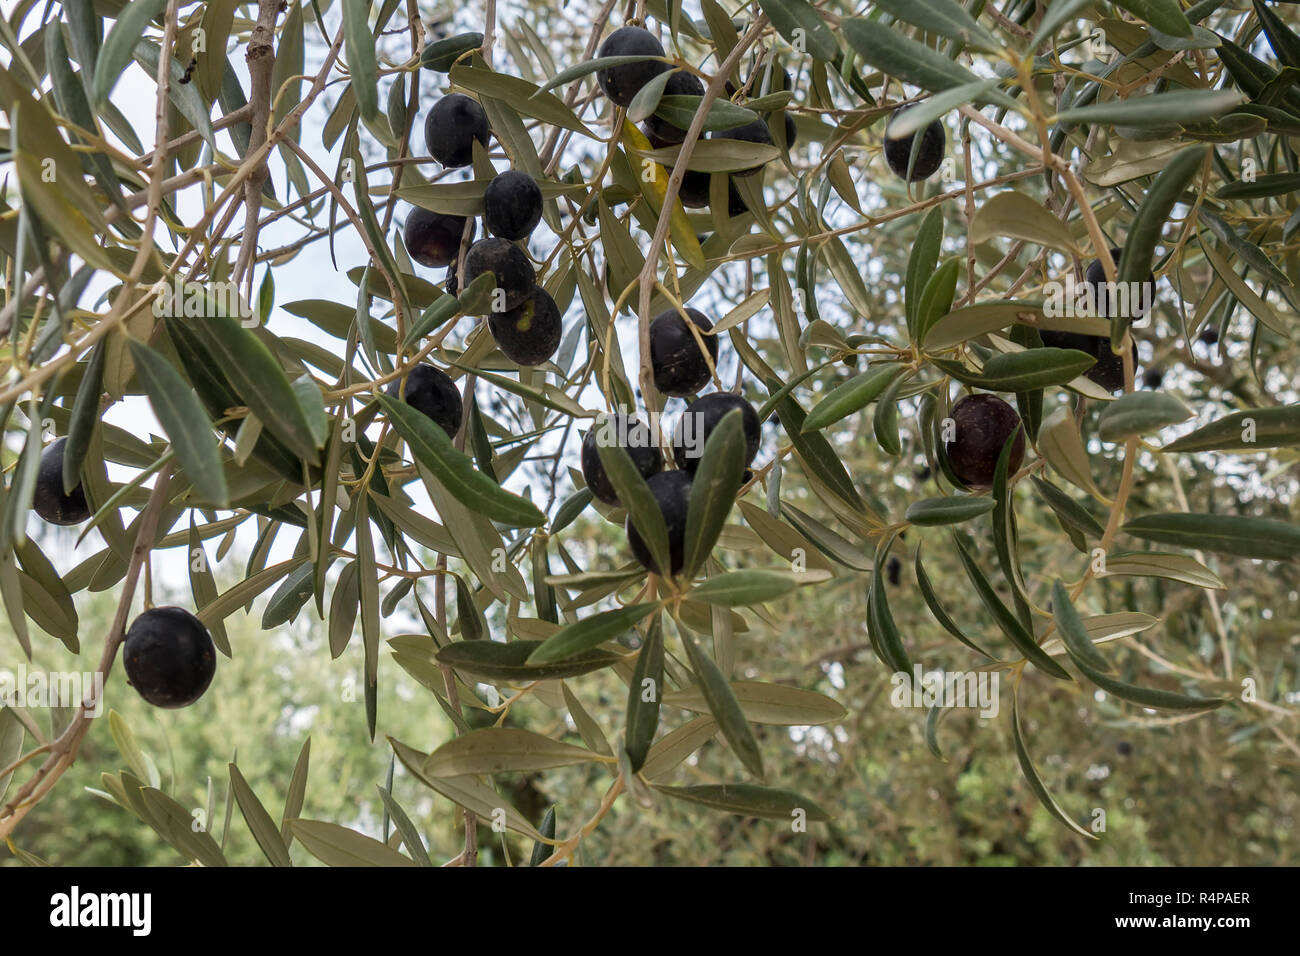 Mature olive nere sulla struttura ad albero Foto Stock